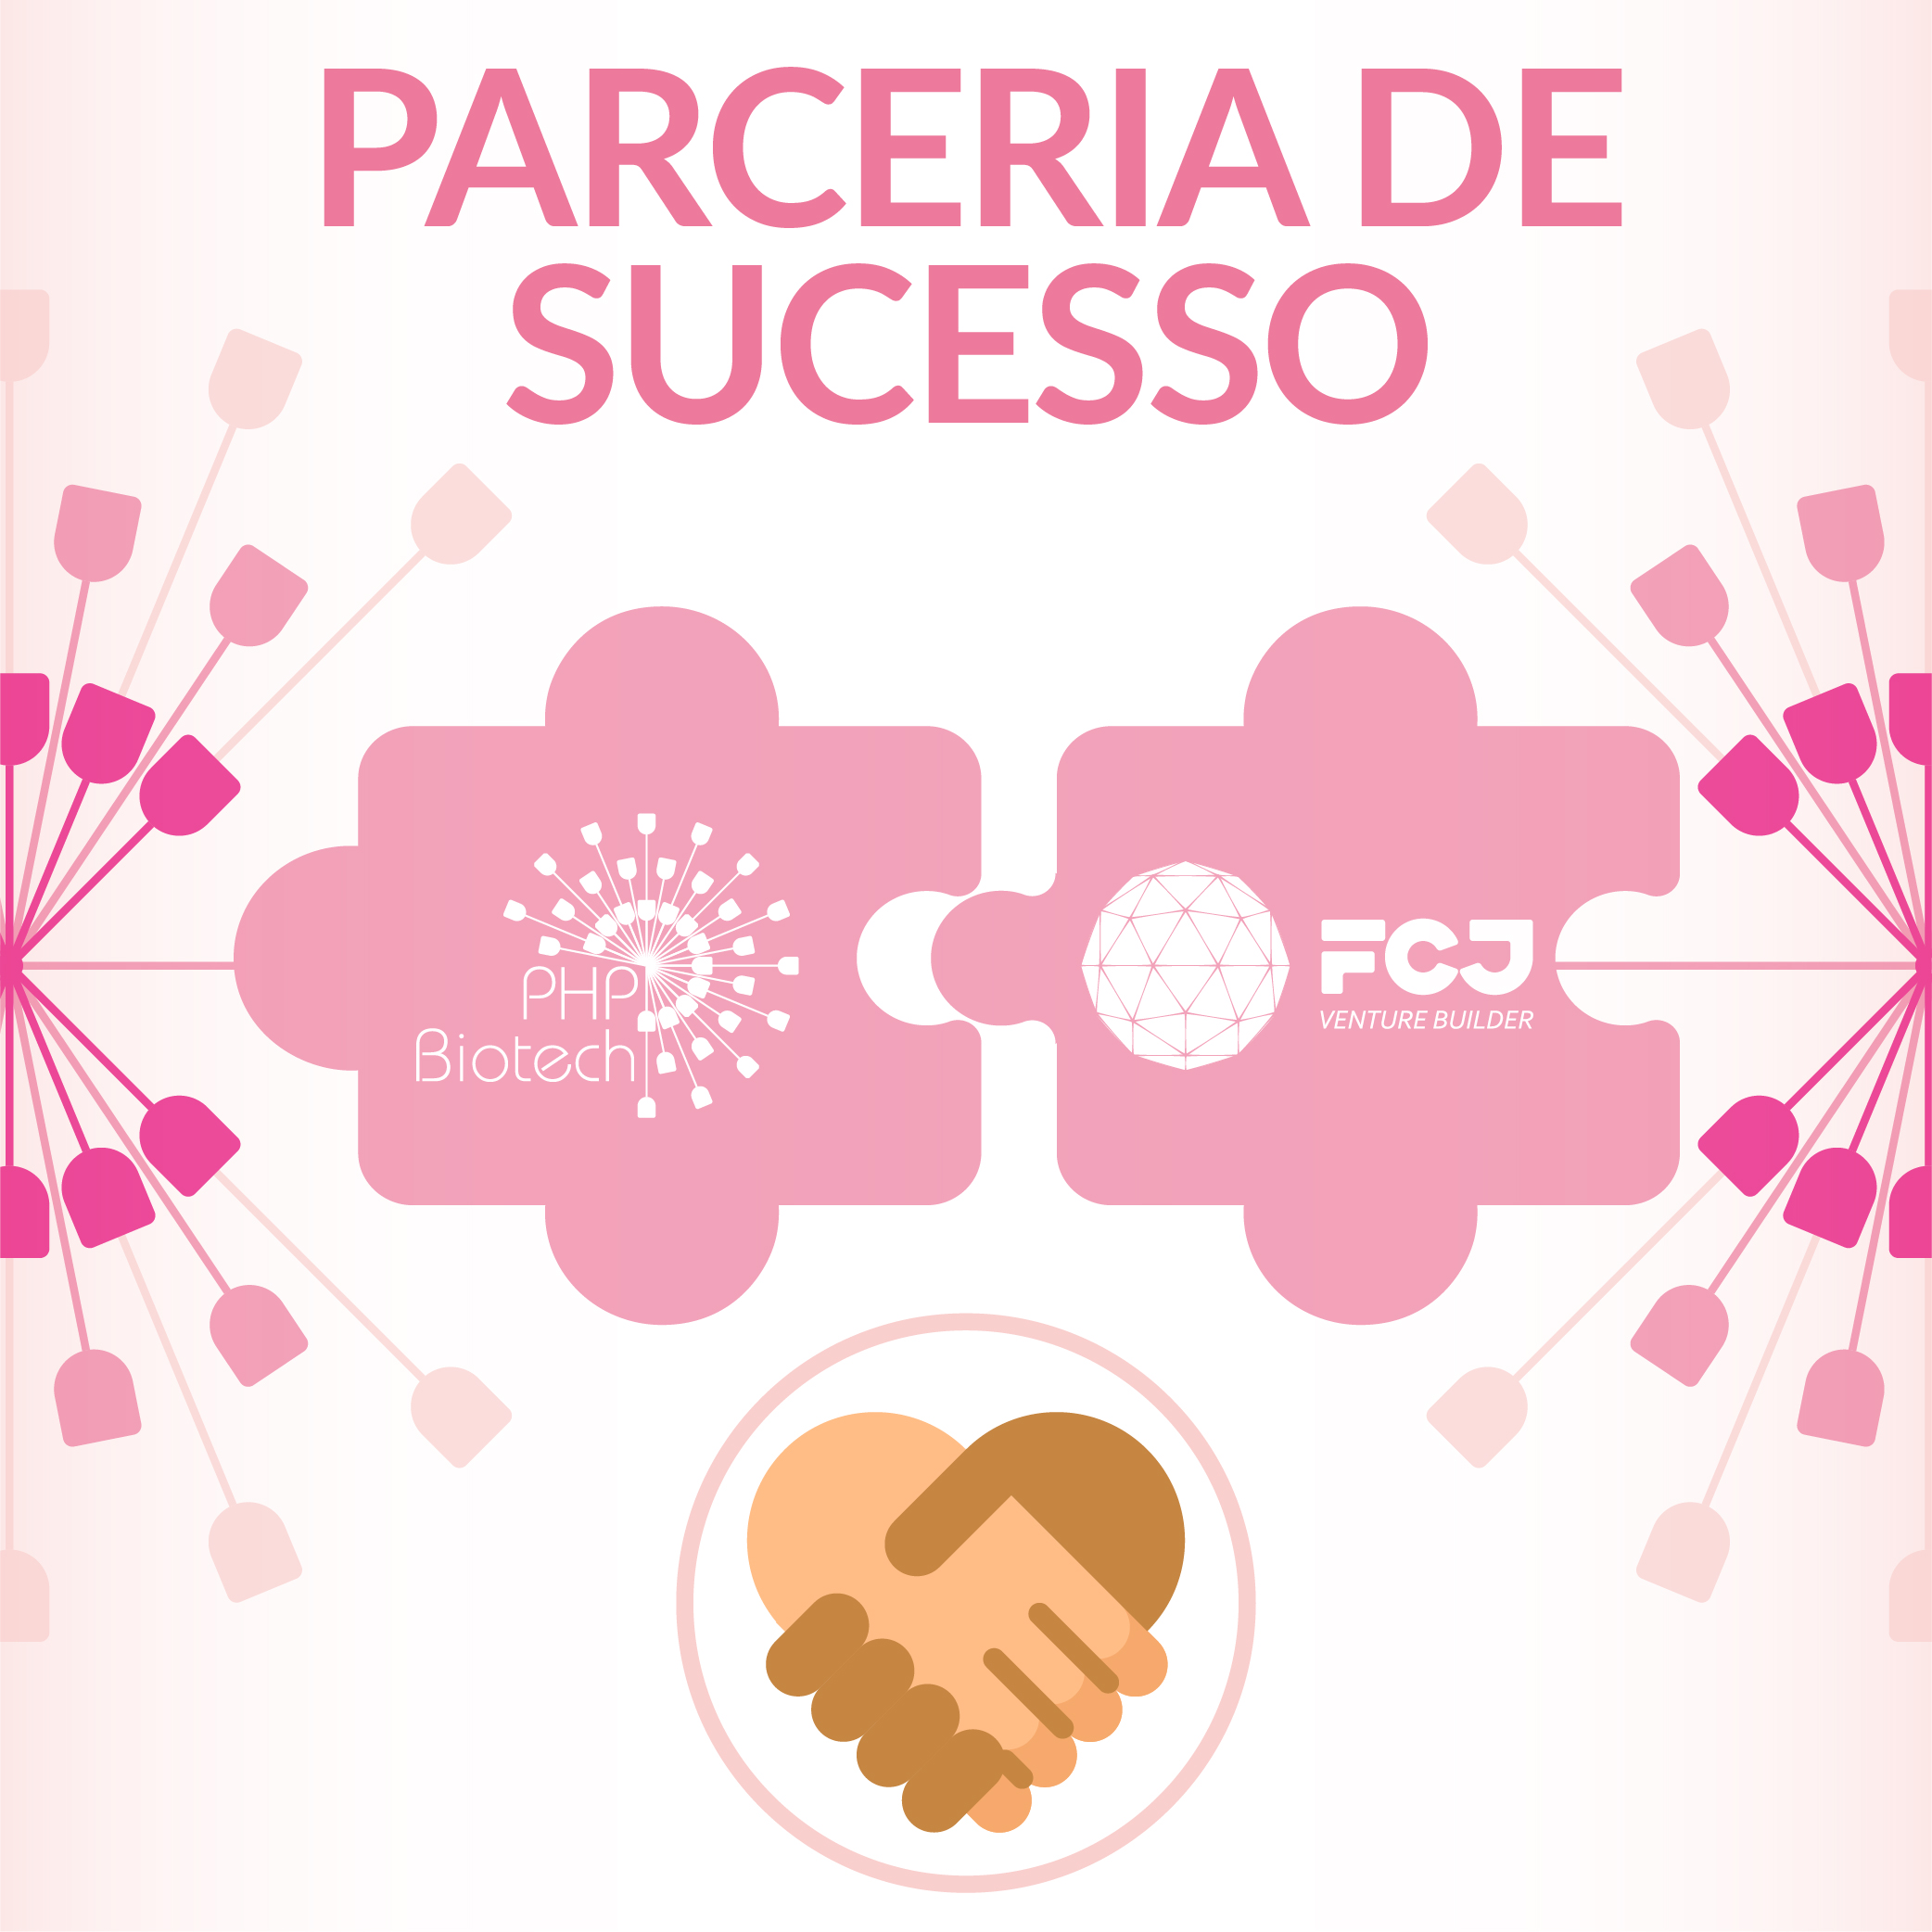 Nova startup brasileira é fundada com parte dos recursos oriundos de um grupo de mulheres empreendedoras que investem em tratamento oncológico inovador